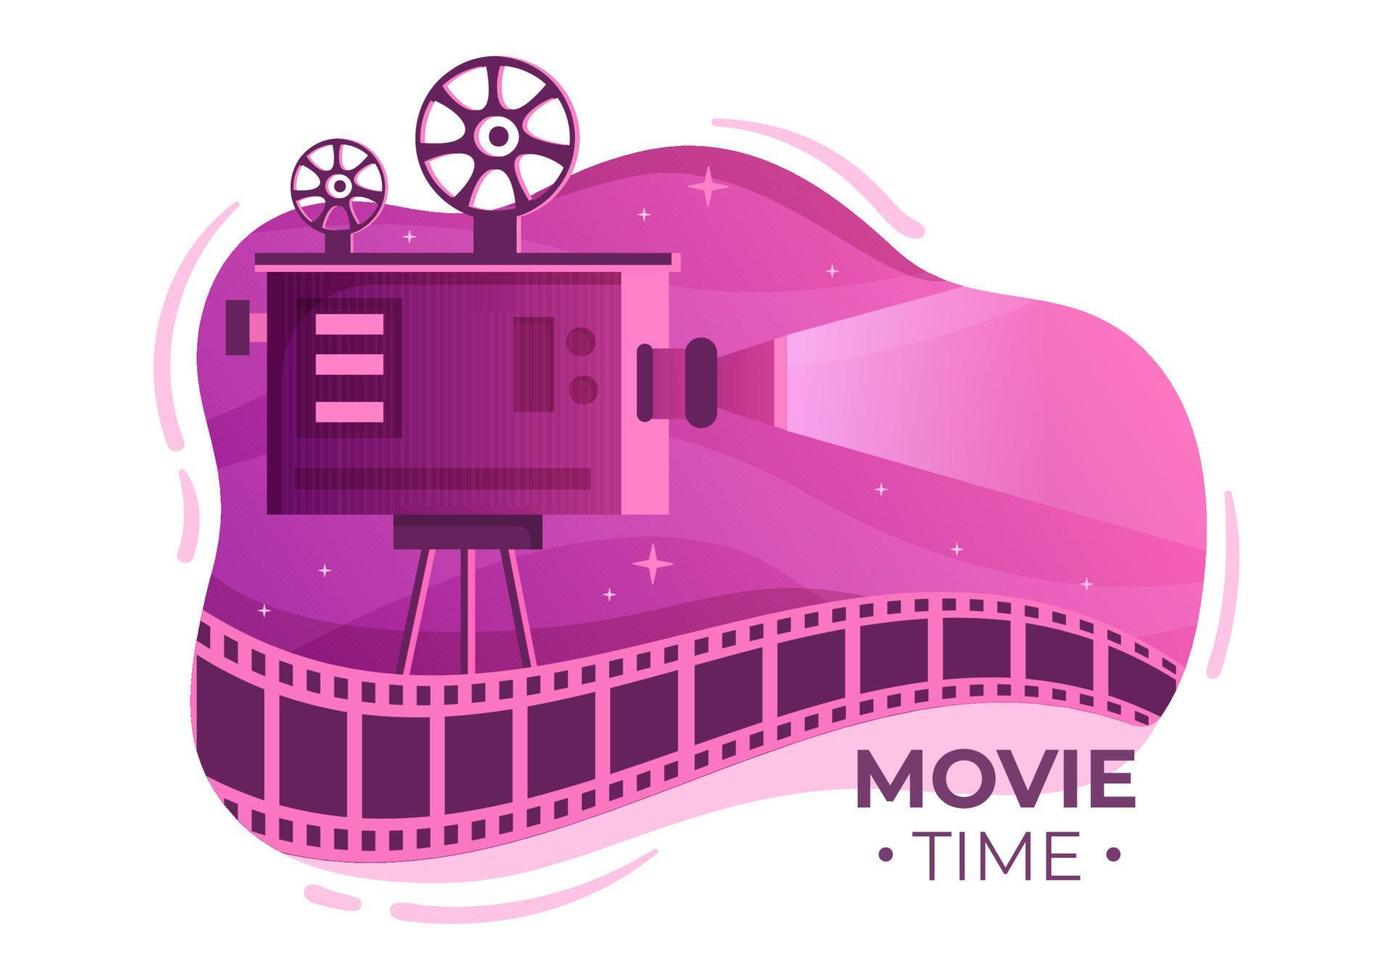 filmpremièreshow of bioscoop met camera, popcorn, Filmklapper, filmband en spoel in platte ontwerpachtergrondillustratie vector